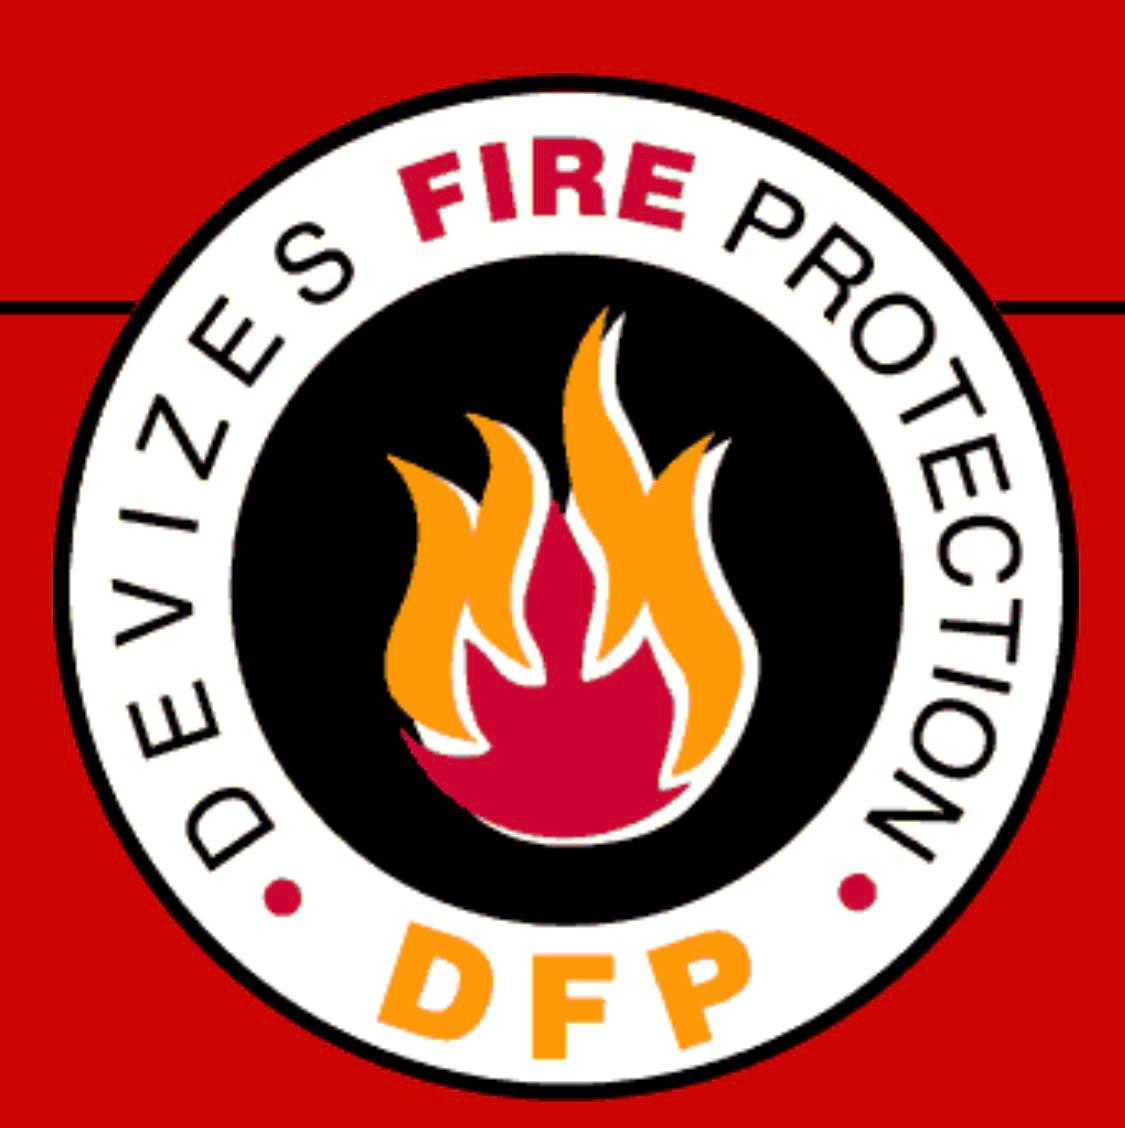 Images Devizes Fire Protection Ltd